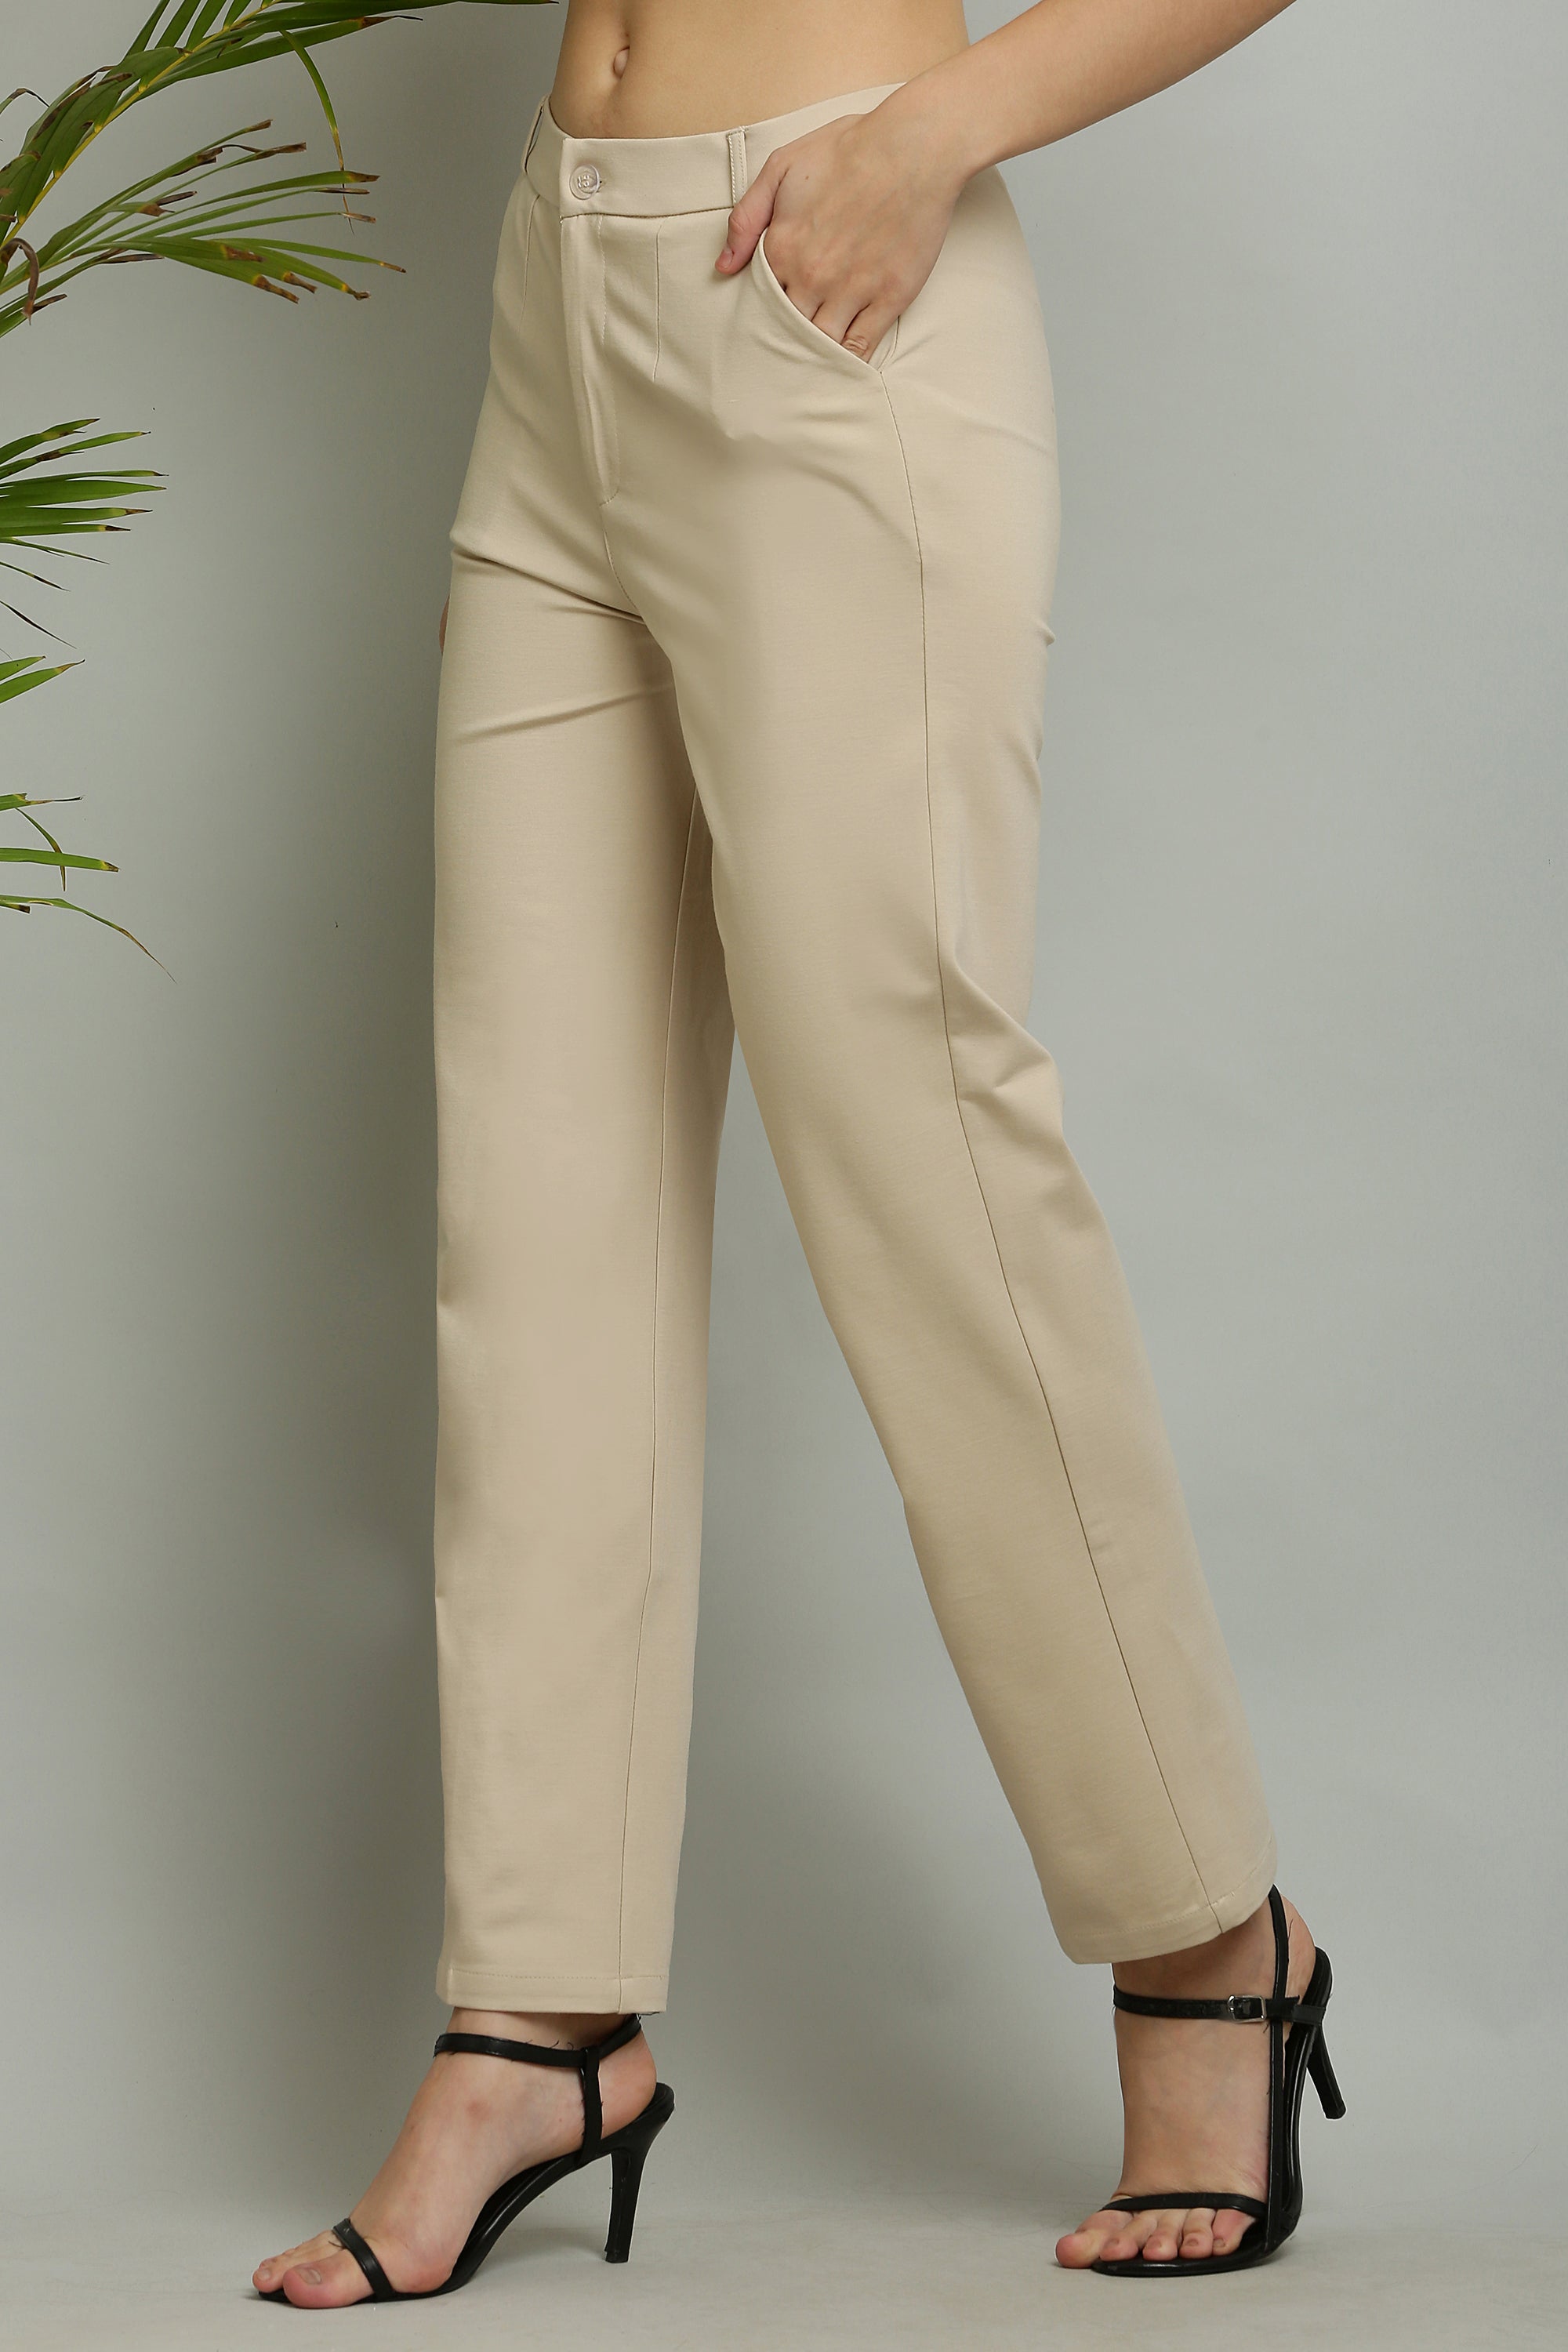 Zx3 formal trouser